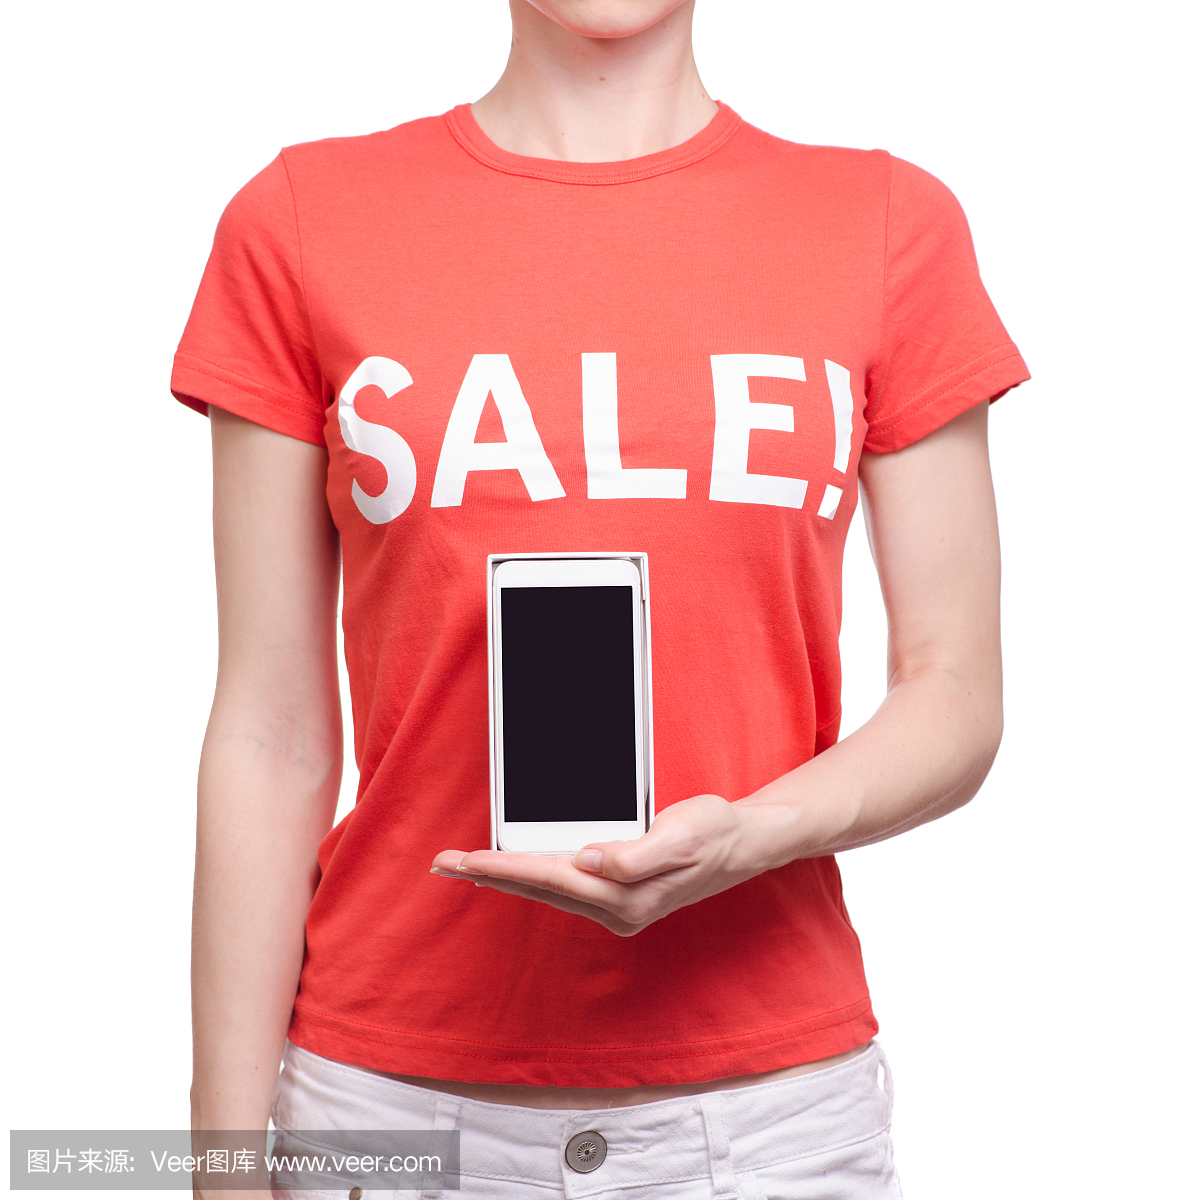 与题字出售在手t恤的女人智能手机手机店购买